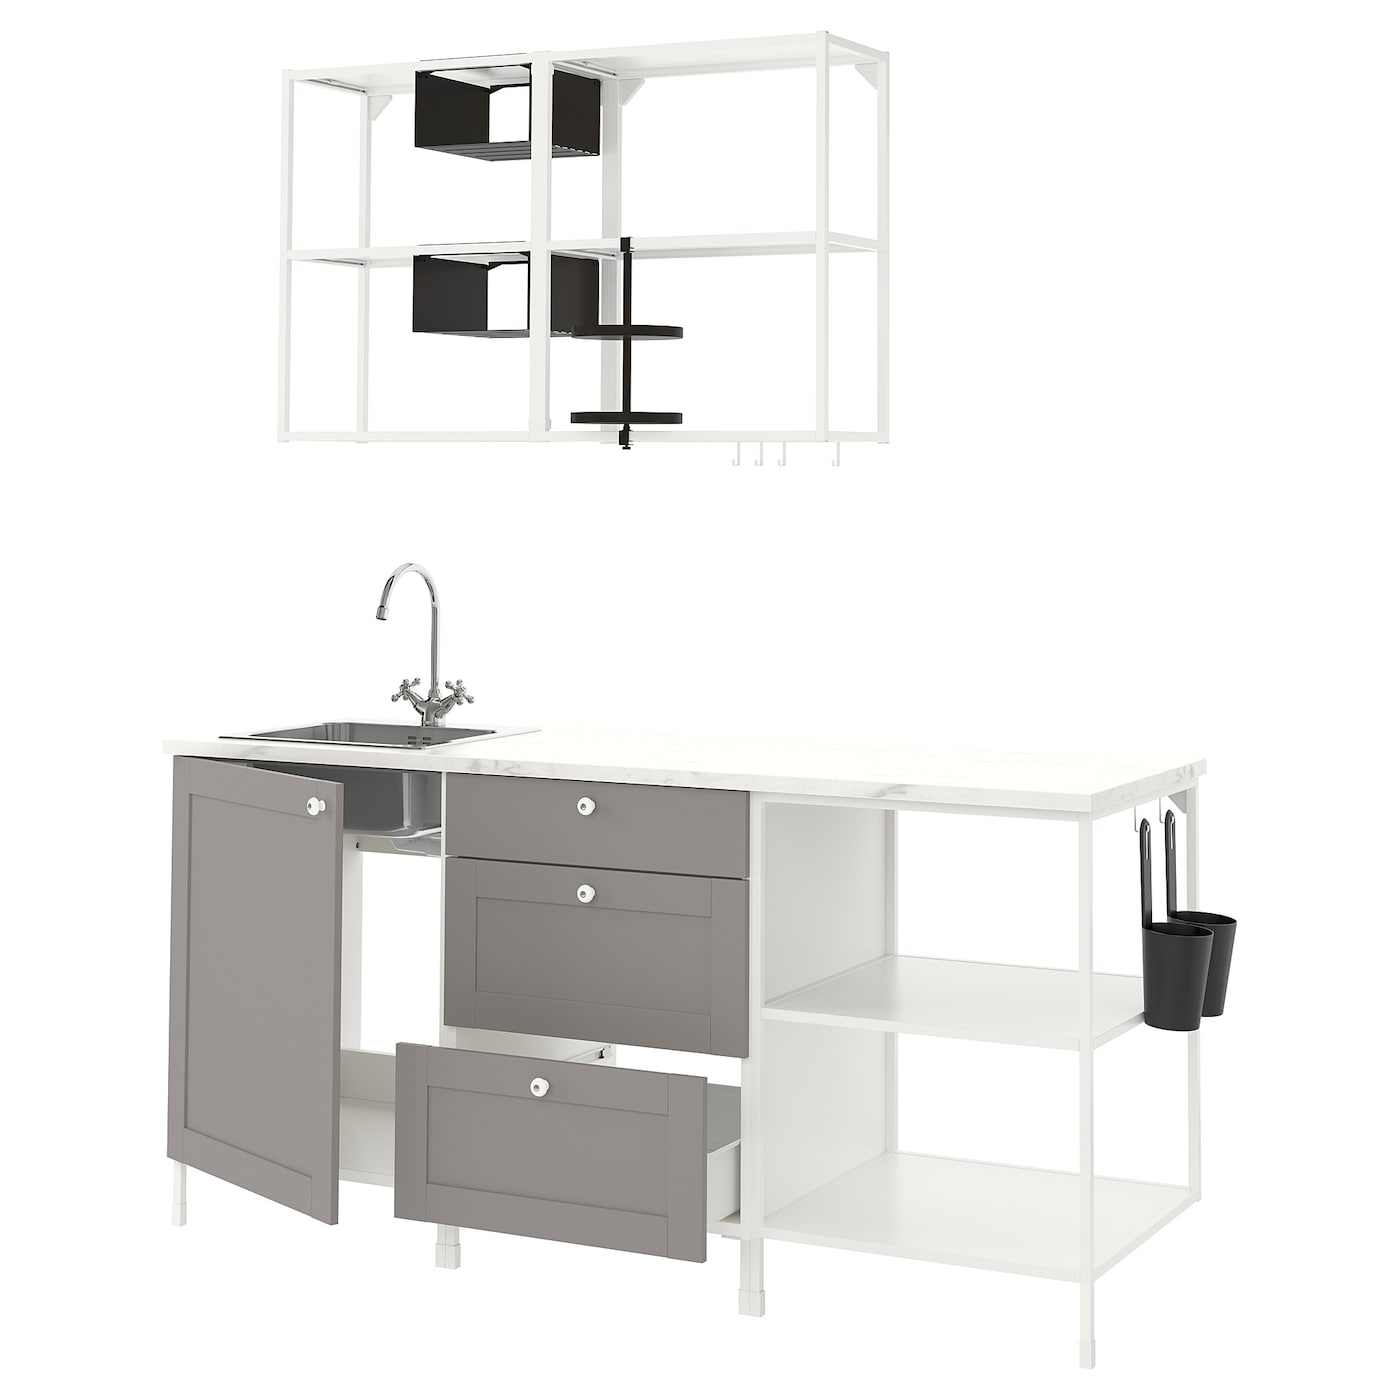 Комбинация для кухонного хранения  - ENHET  IKEA/ ЭНХЕТ ИКЕА, 183x63,5x222 см, белый/серый